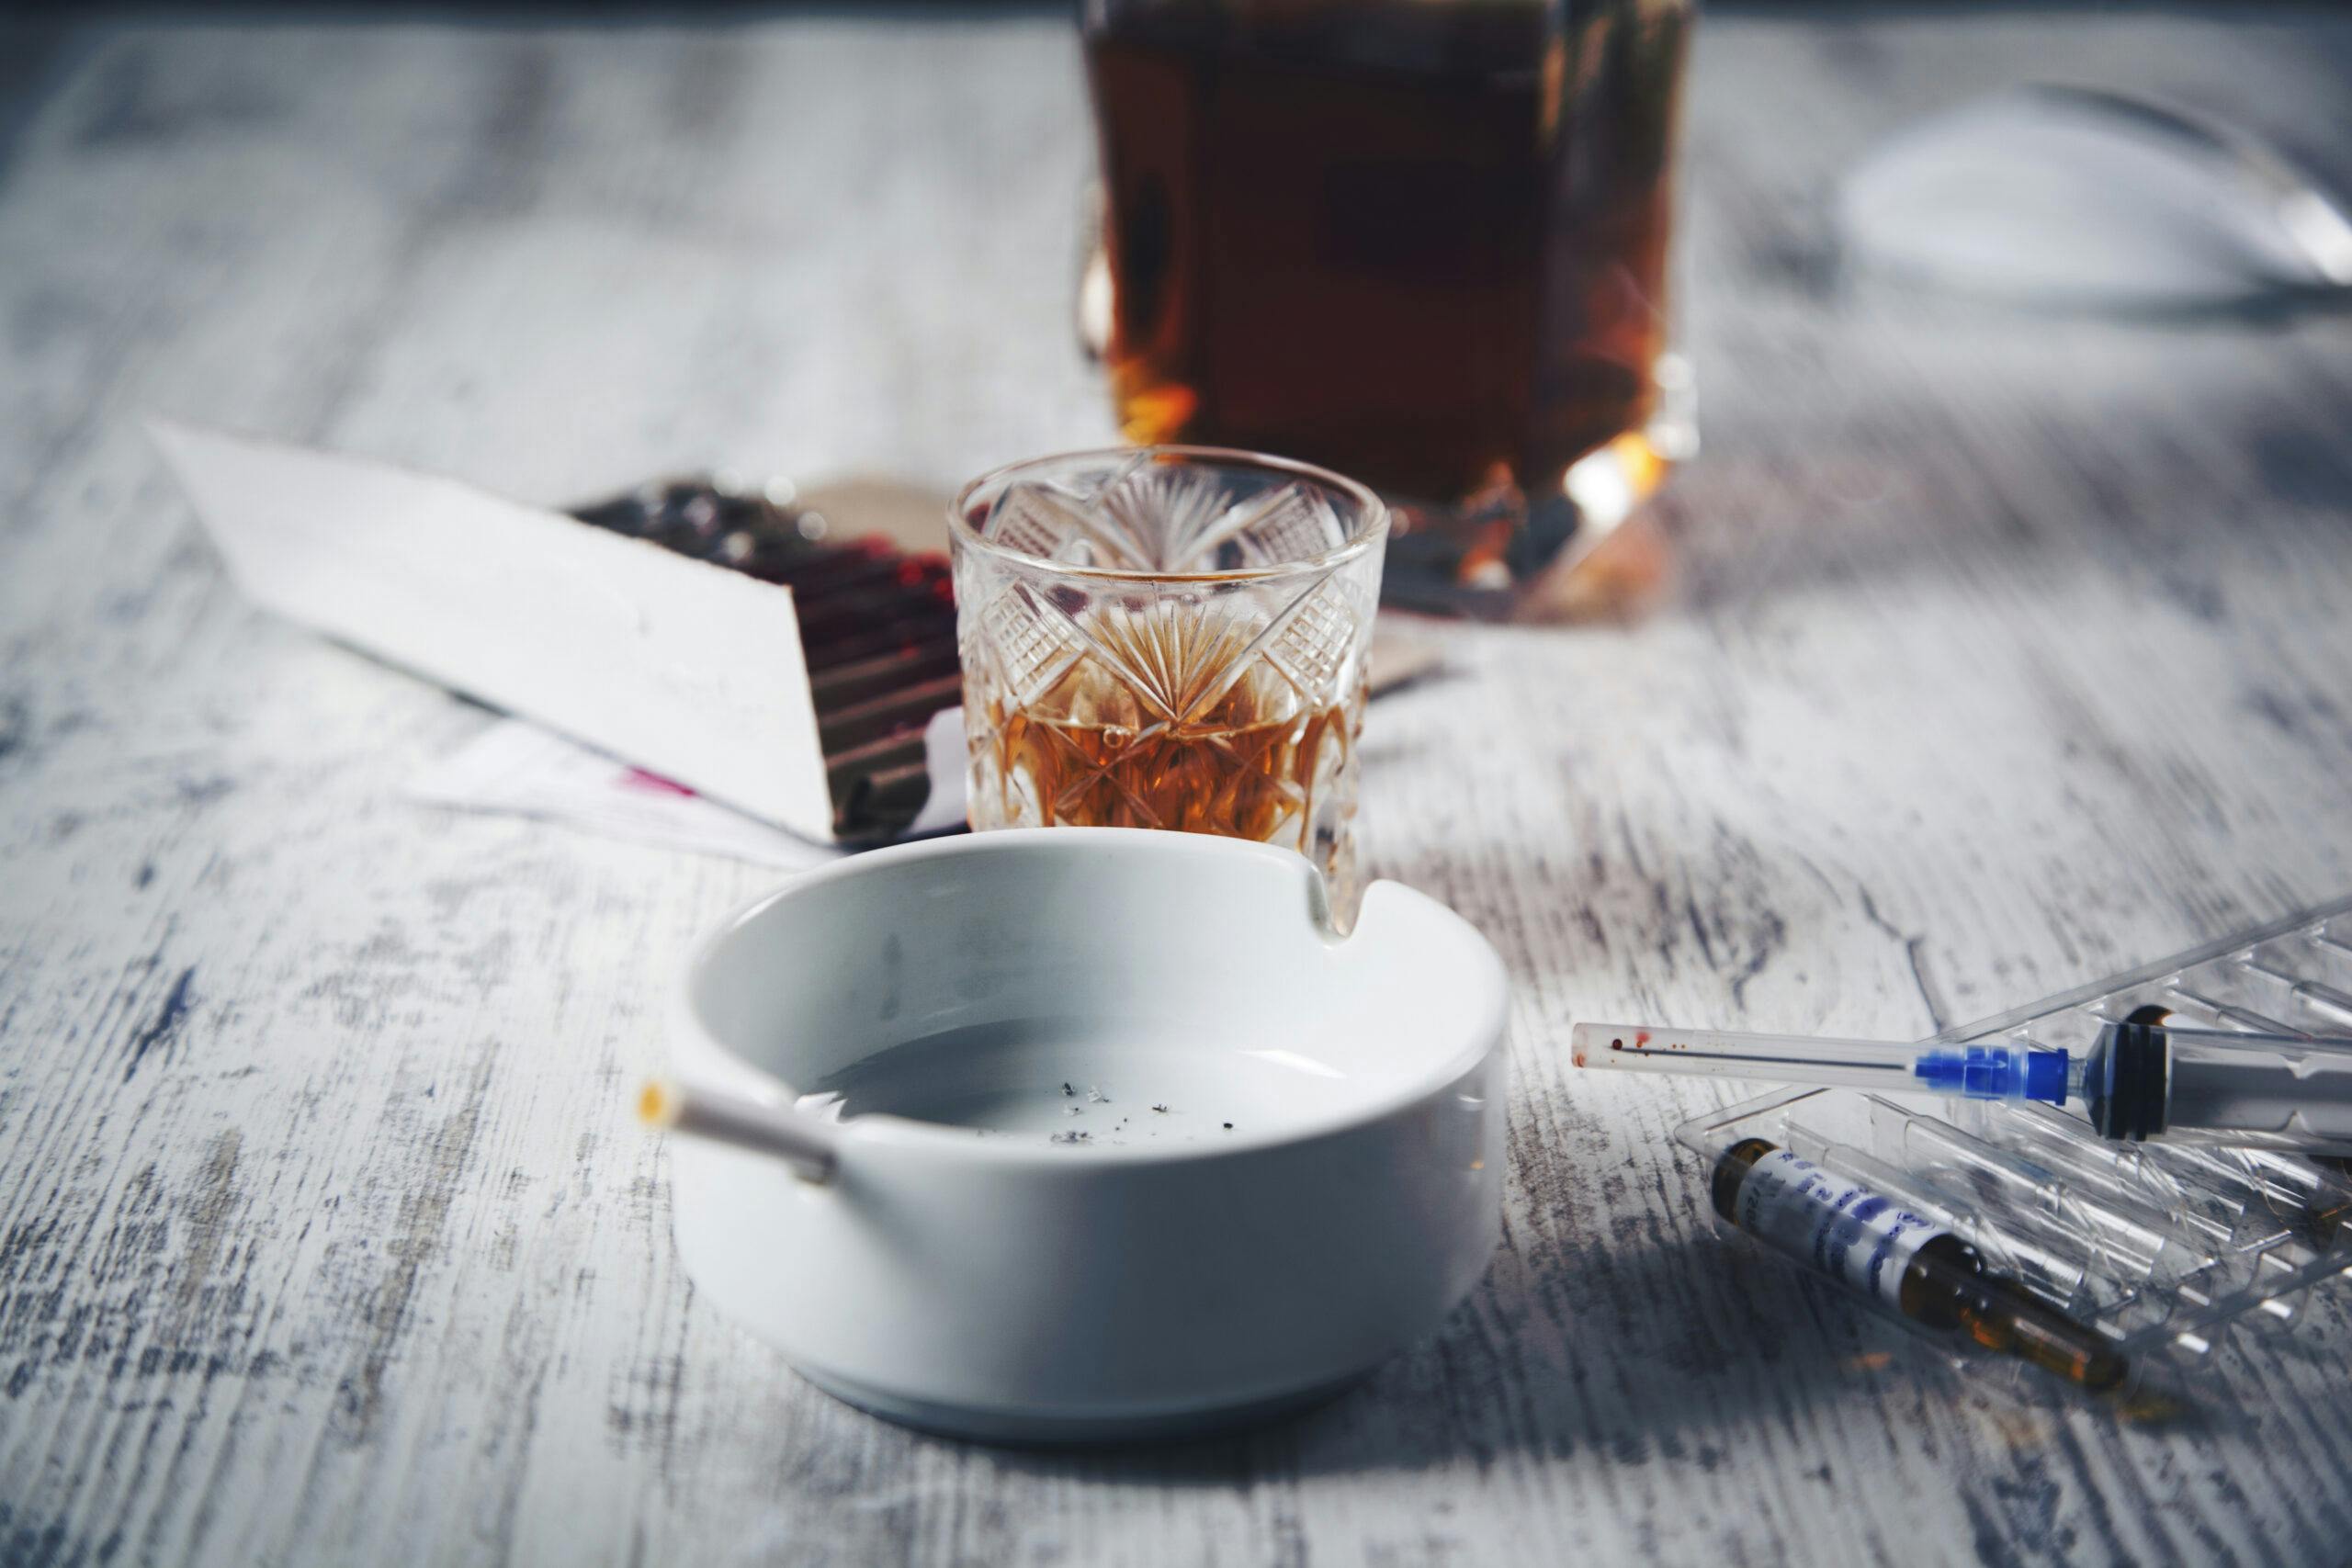 whiskey and heroin syringe liquor bottle